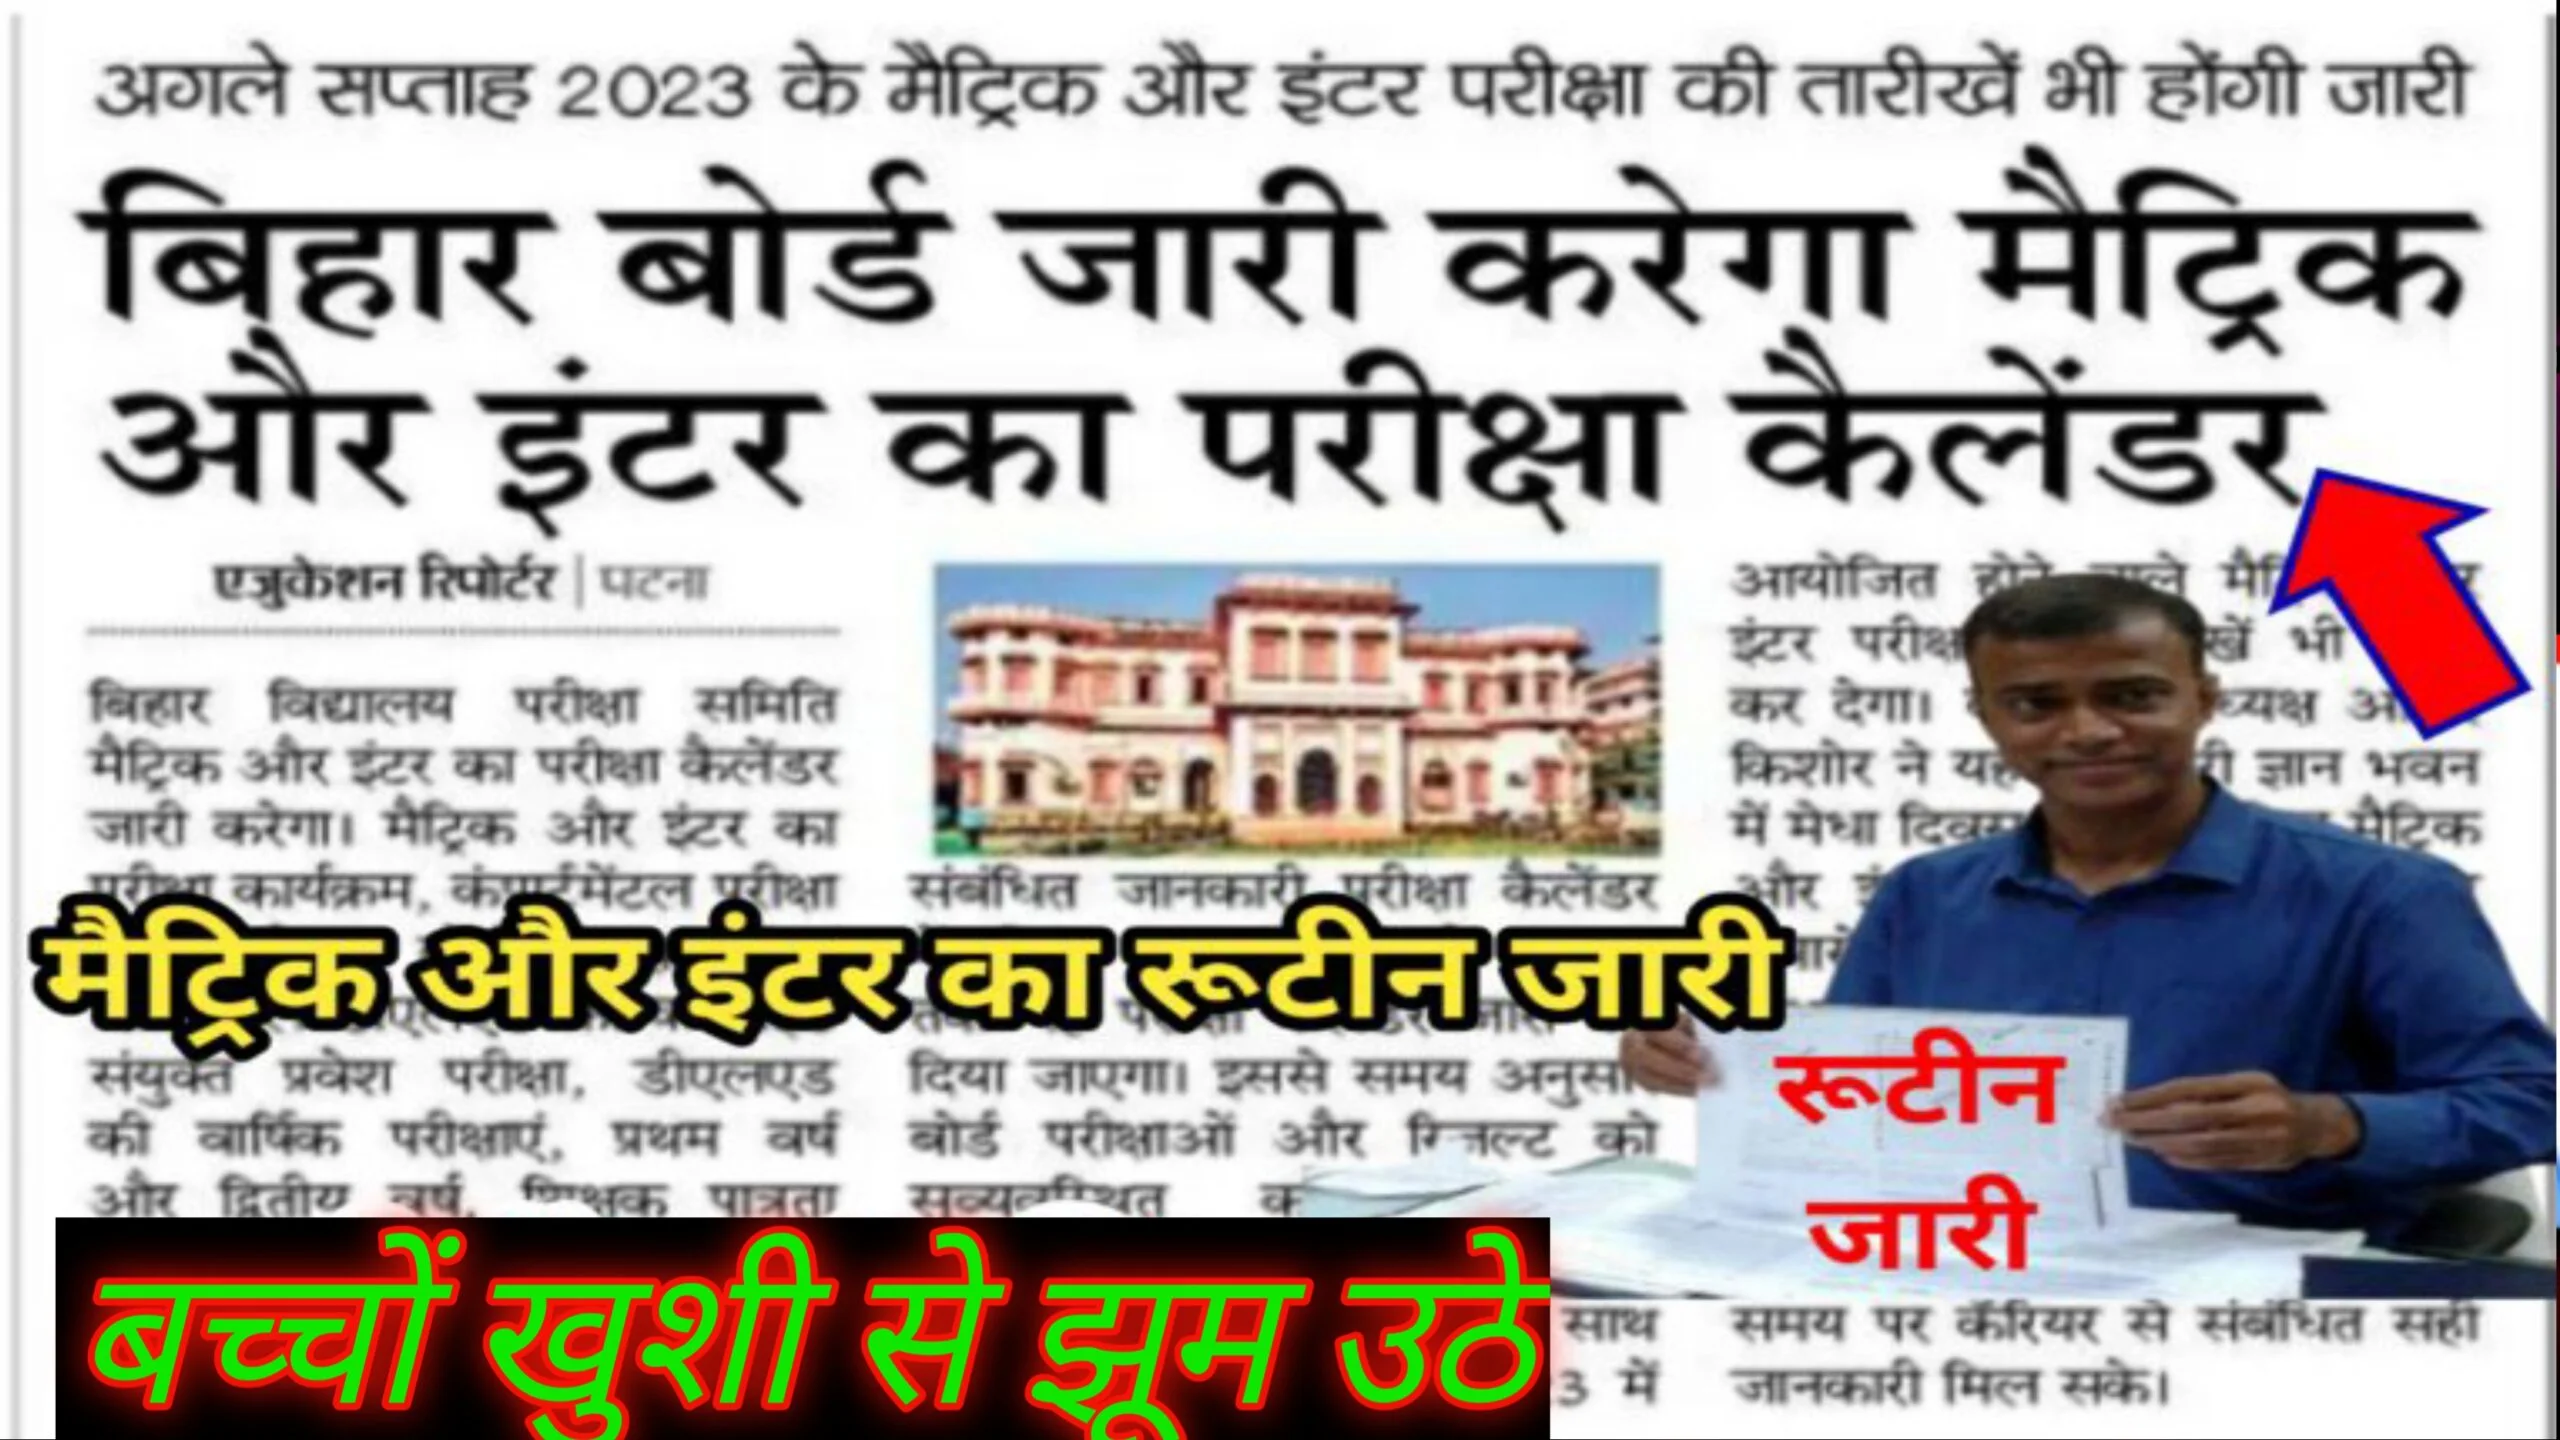 बिहार बोर्ड लेटेस्ट न्यूज़ 2023 बिहार बोर्ड ने जारी किया मैट्रिक का इंटर के लिए परीक्षा कैलेंडर है अभी Bihar Board Latest News 2023 Celendar